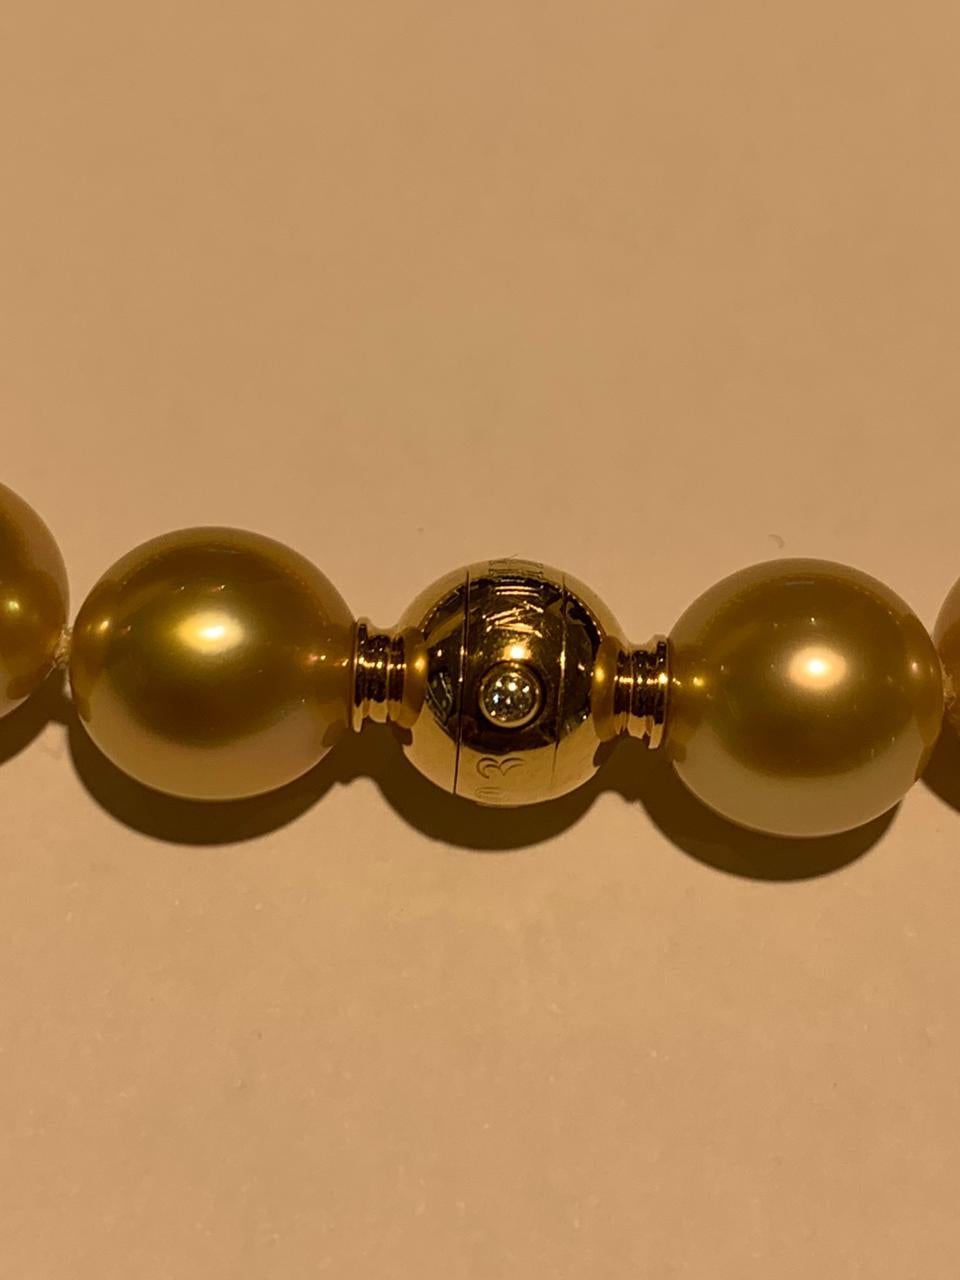 Collier en or des mers du Sud de Mikimoto 
13,1 x 11 mm 
longueur 18